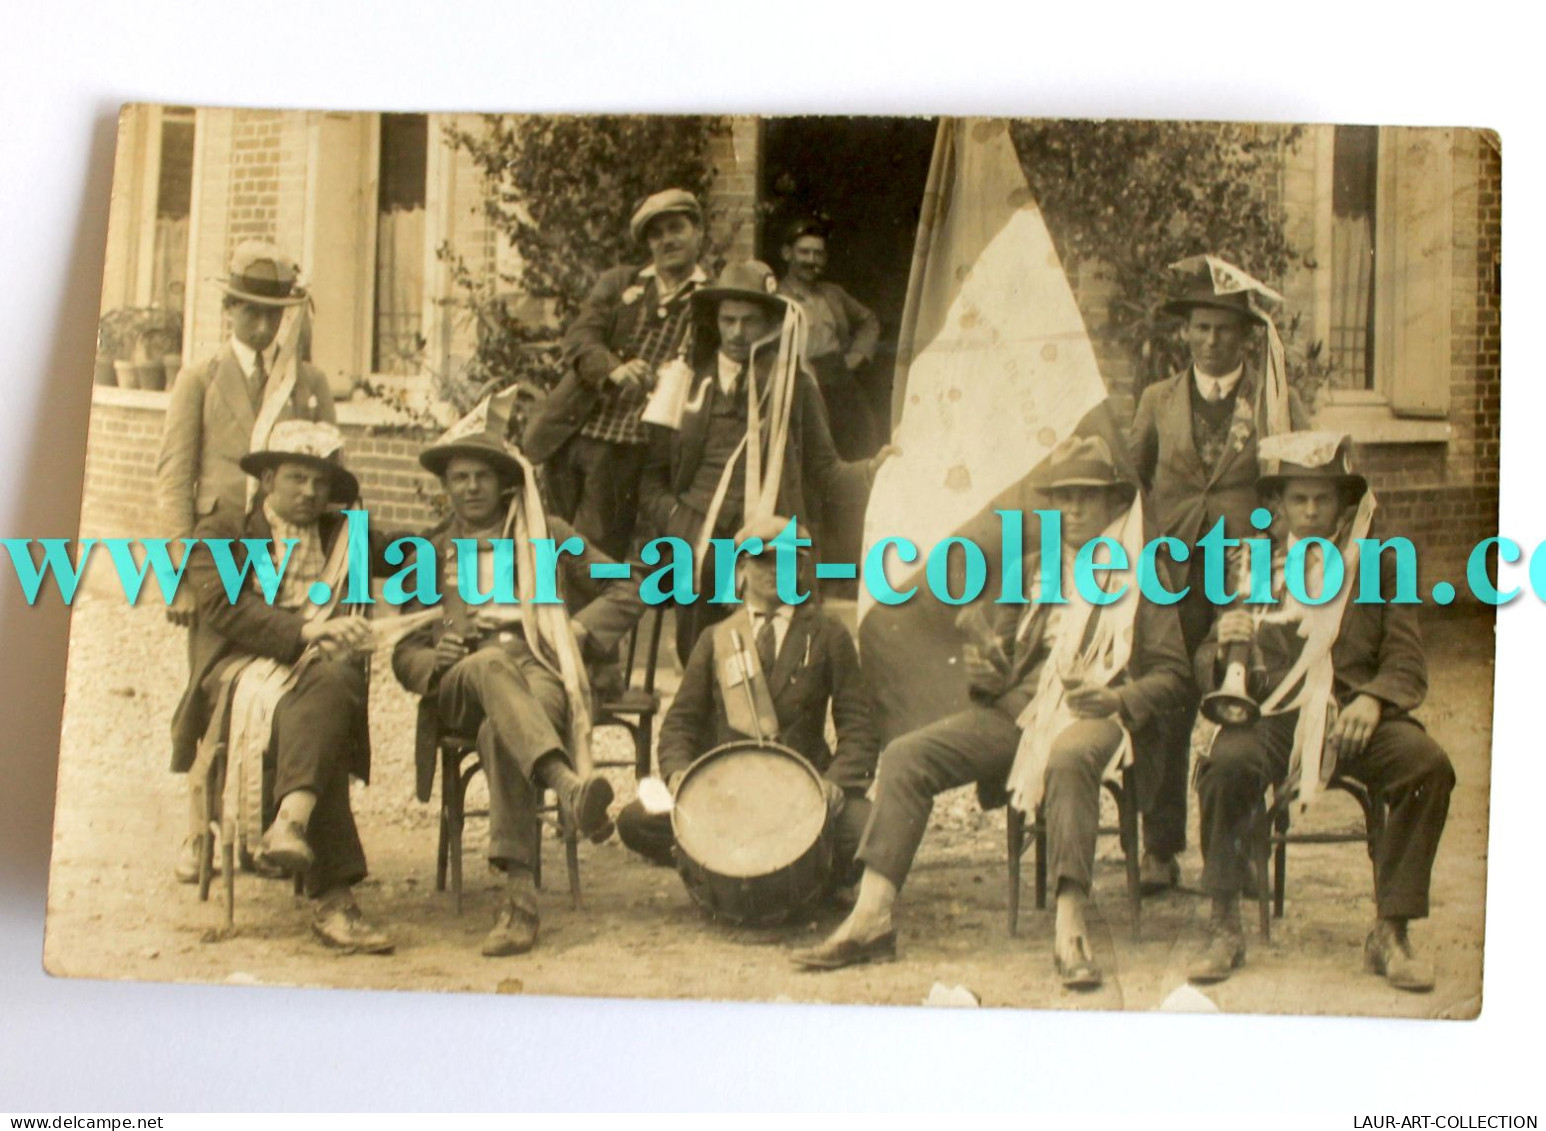 RARE CPA PHOTO 1900-20 GROUPE MUSICIEN HOMME ANIMÉ MUSIQUE FANFARE FOLKLORE CARTE POSTALE ANCIENNE POSTCARD (1303.8 - Music And Musicians